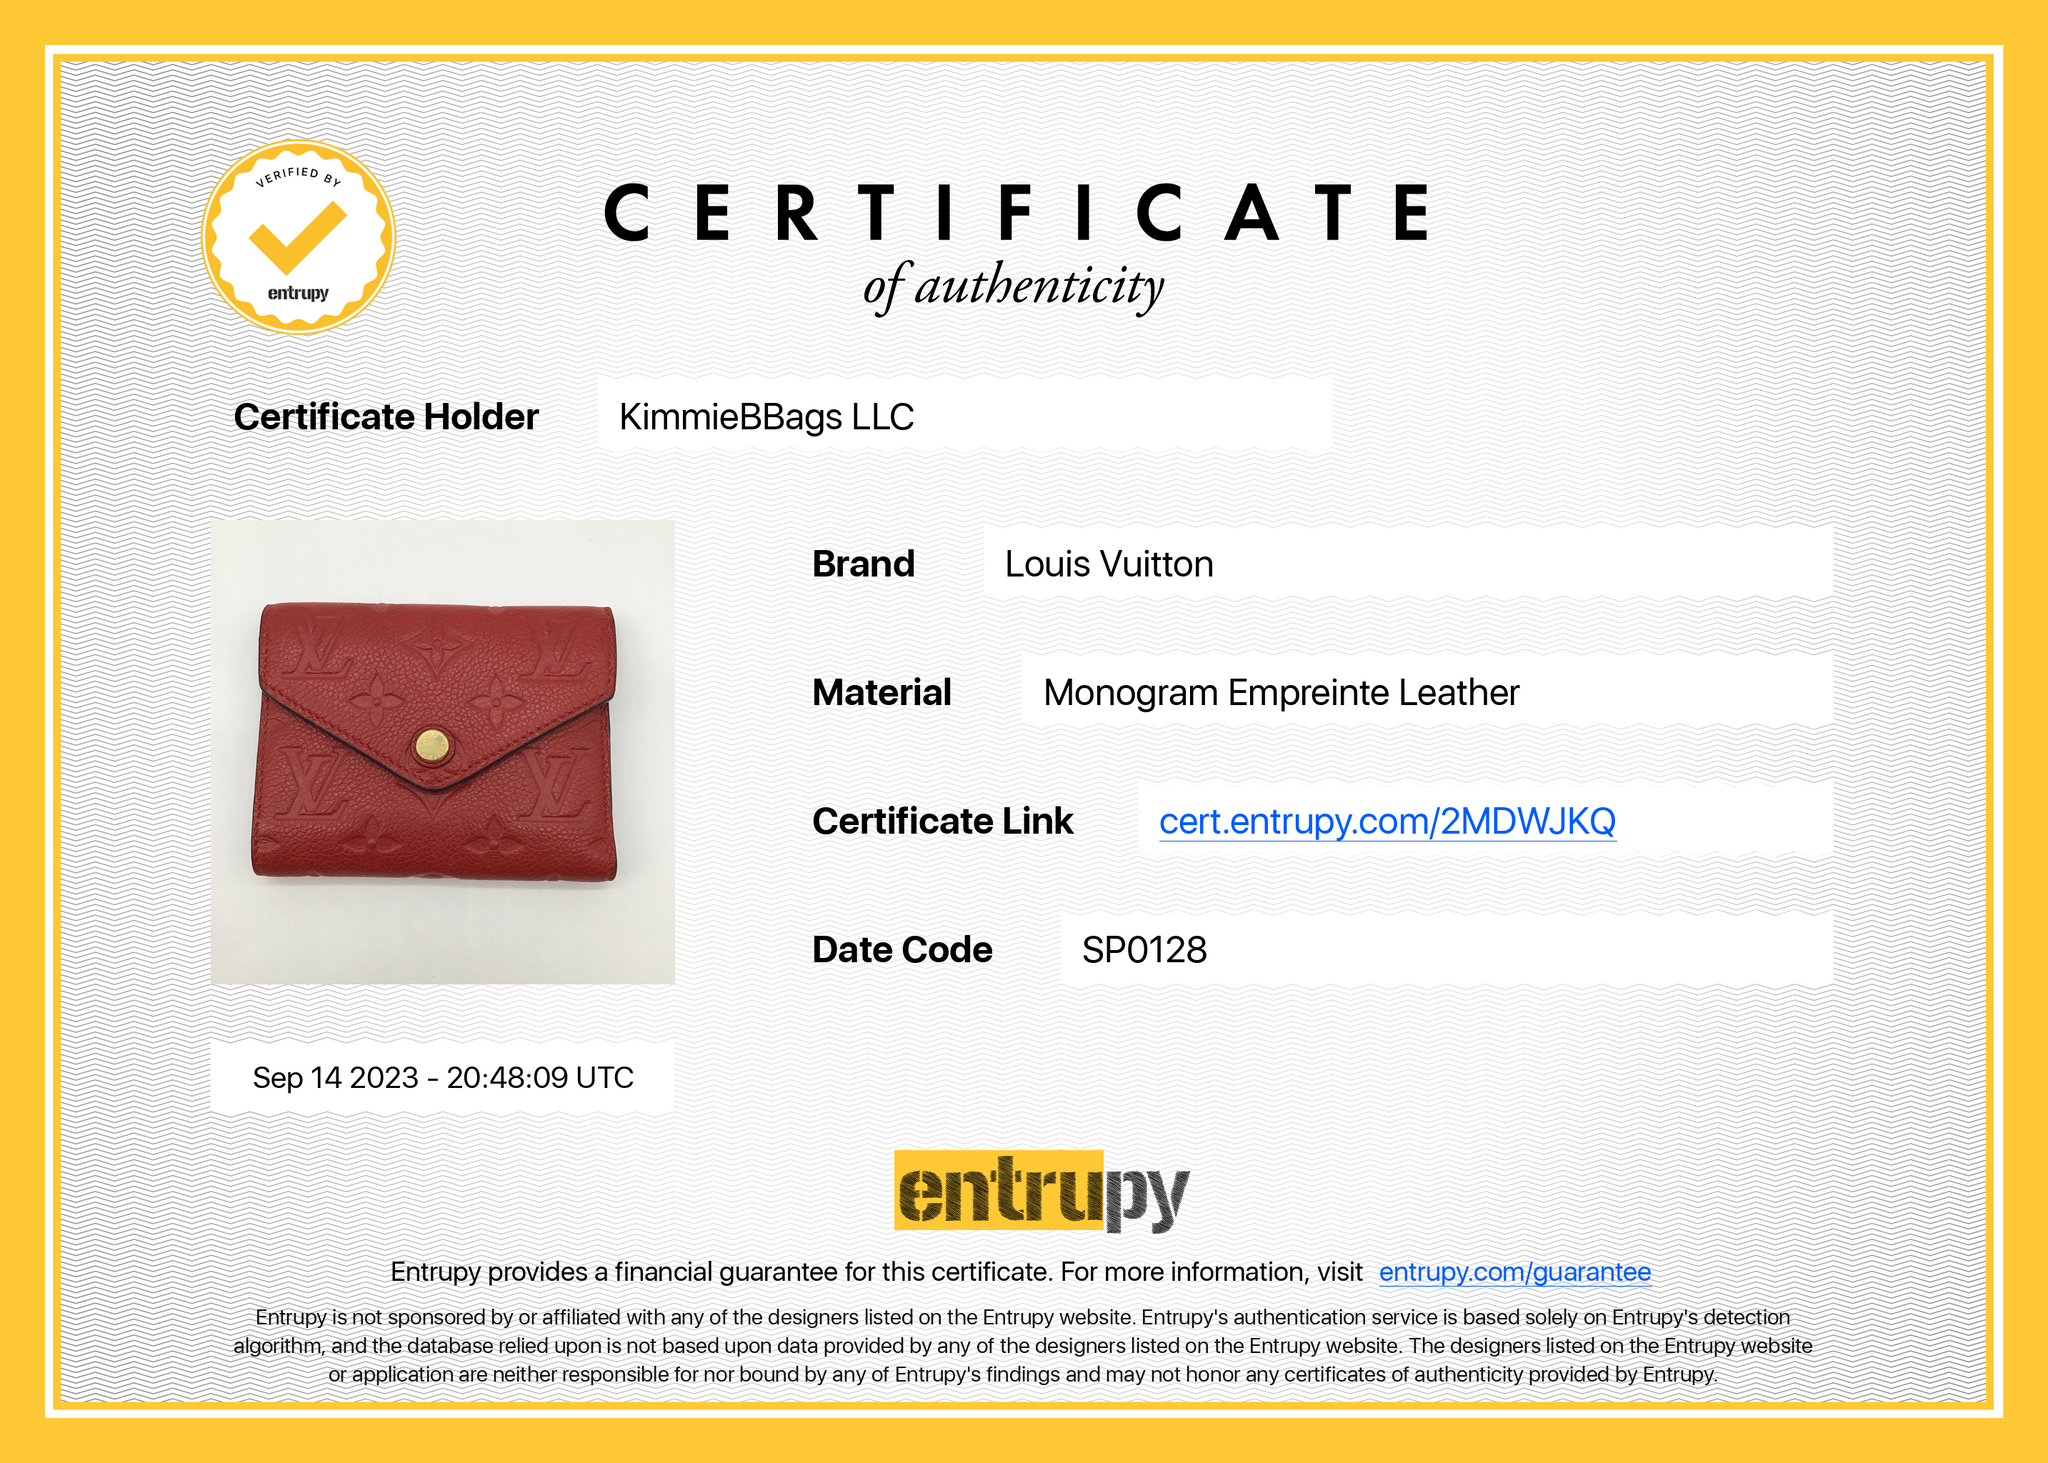 LOUIS VUITTON Tri-fold wallet M63489 Portonet Bie Cartes Crédit Epi Le –